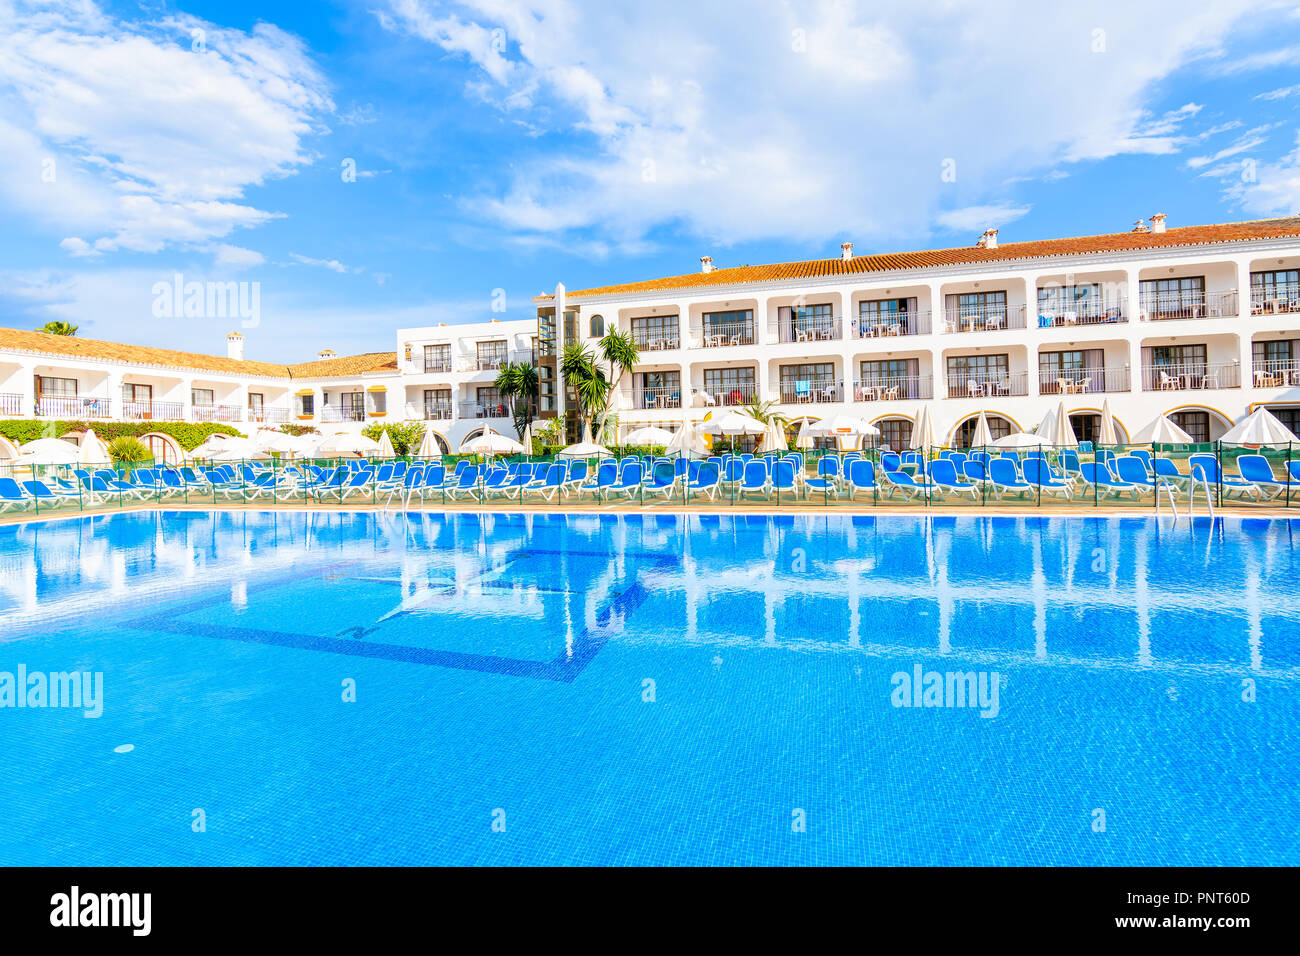 Stadt Marbella, Spanien - 8. Mai 2018: Swimming Pool von einem Hotel im Stil eines andalusischen Dorfes gebaut an der Costa del Sol in der Nähe von Malaga Stadt. Spanien ist Stockfoto